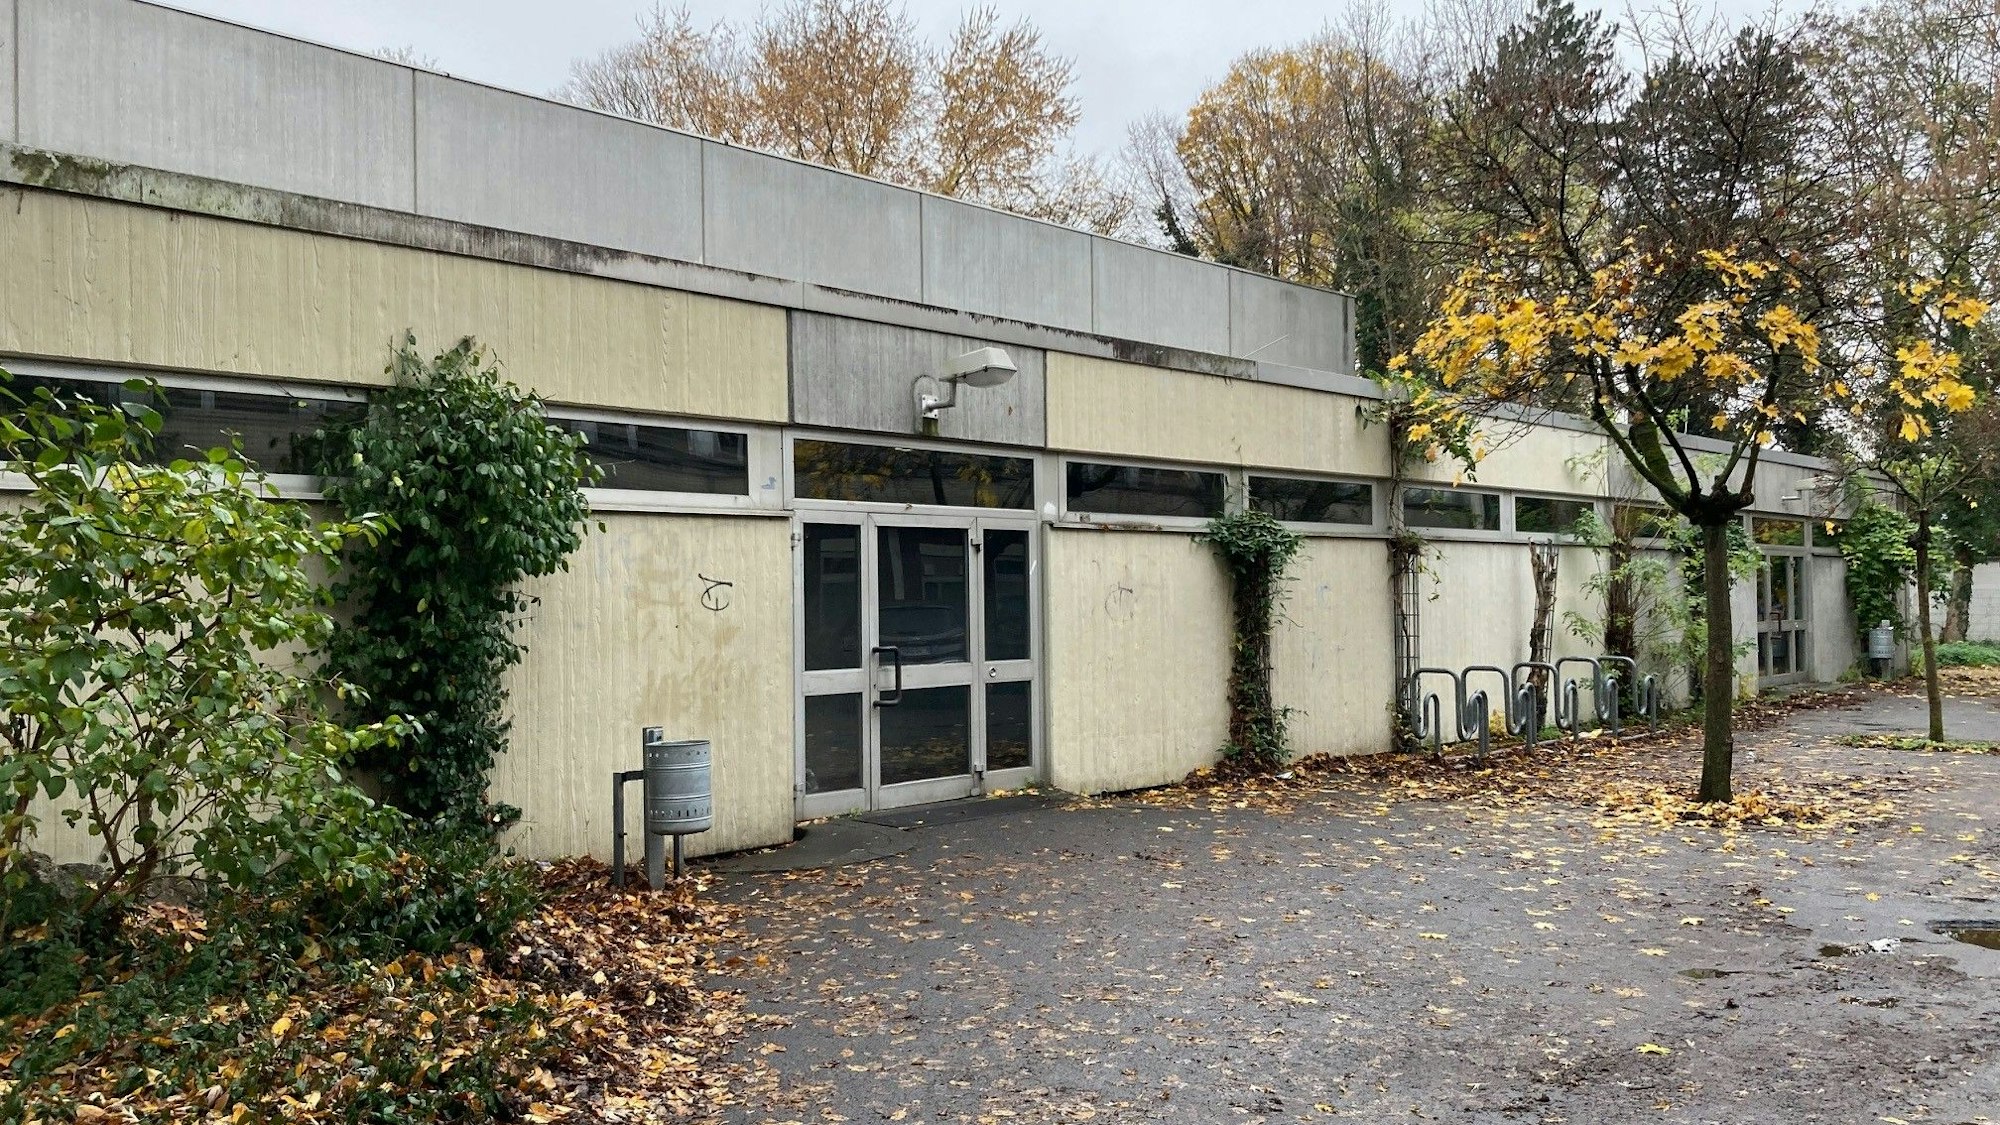 Der Eingang der Sporthalle Zum Kuckental in Frechen. Ein graues Gebäude mit einem Flachdach und einer grauen Tür mit Glasscheiben.